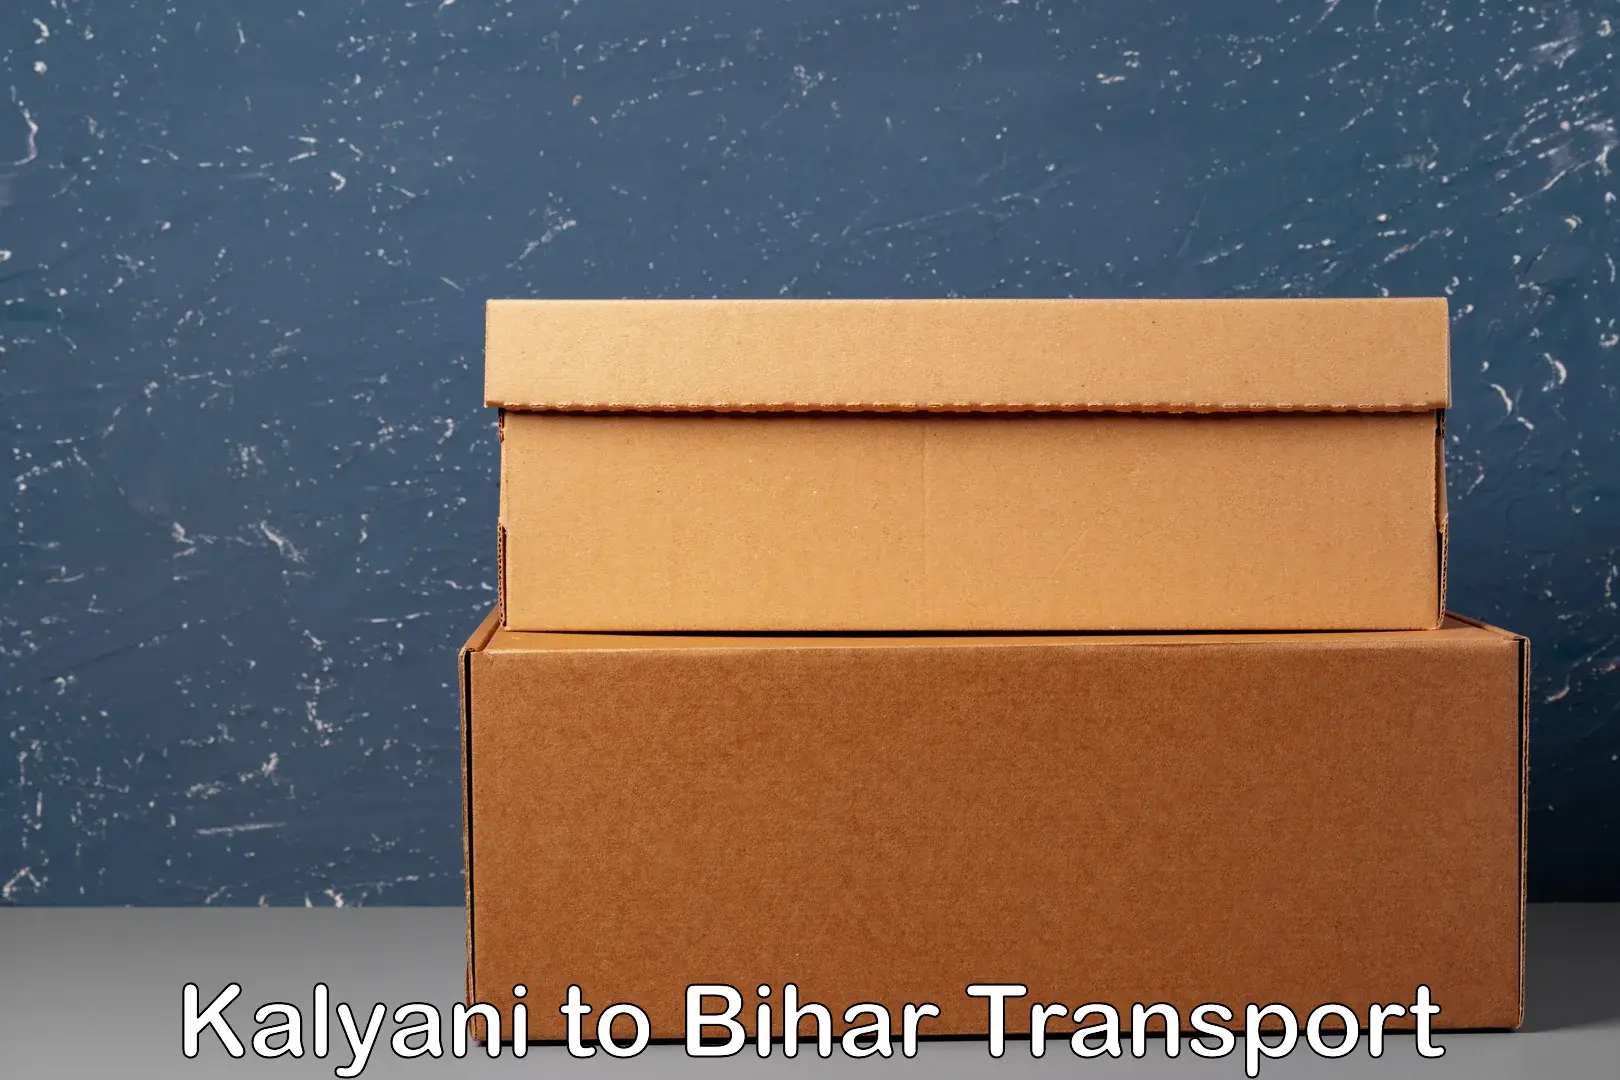 Daily transport service Kalyani to Patna